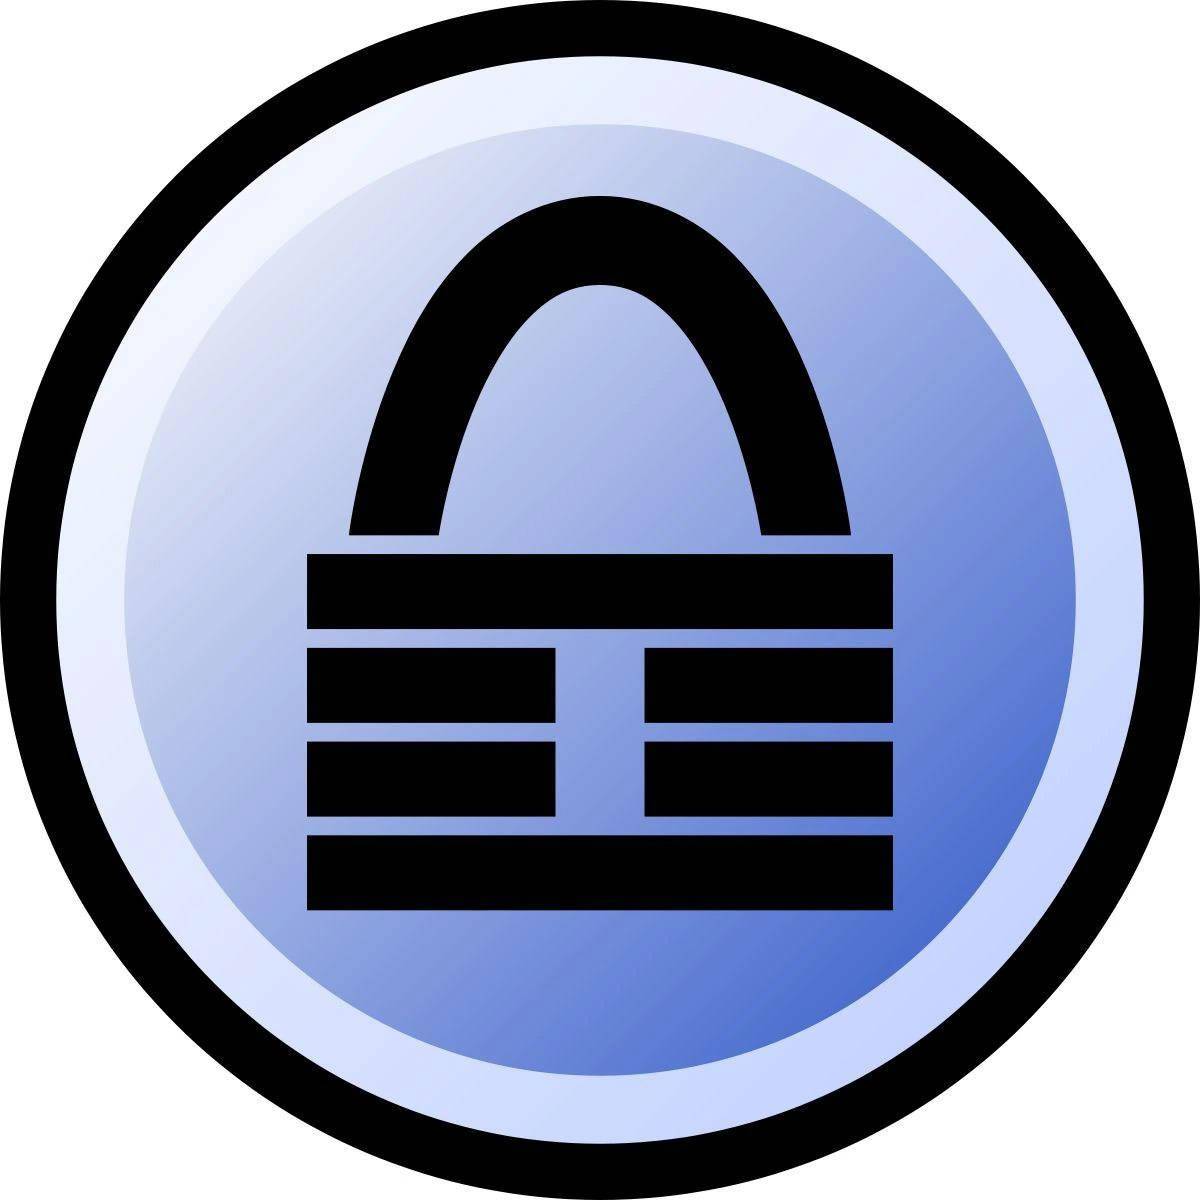 密码管理工具KeePass被曝安全漏洞 可在内存中检索该软件主密码